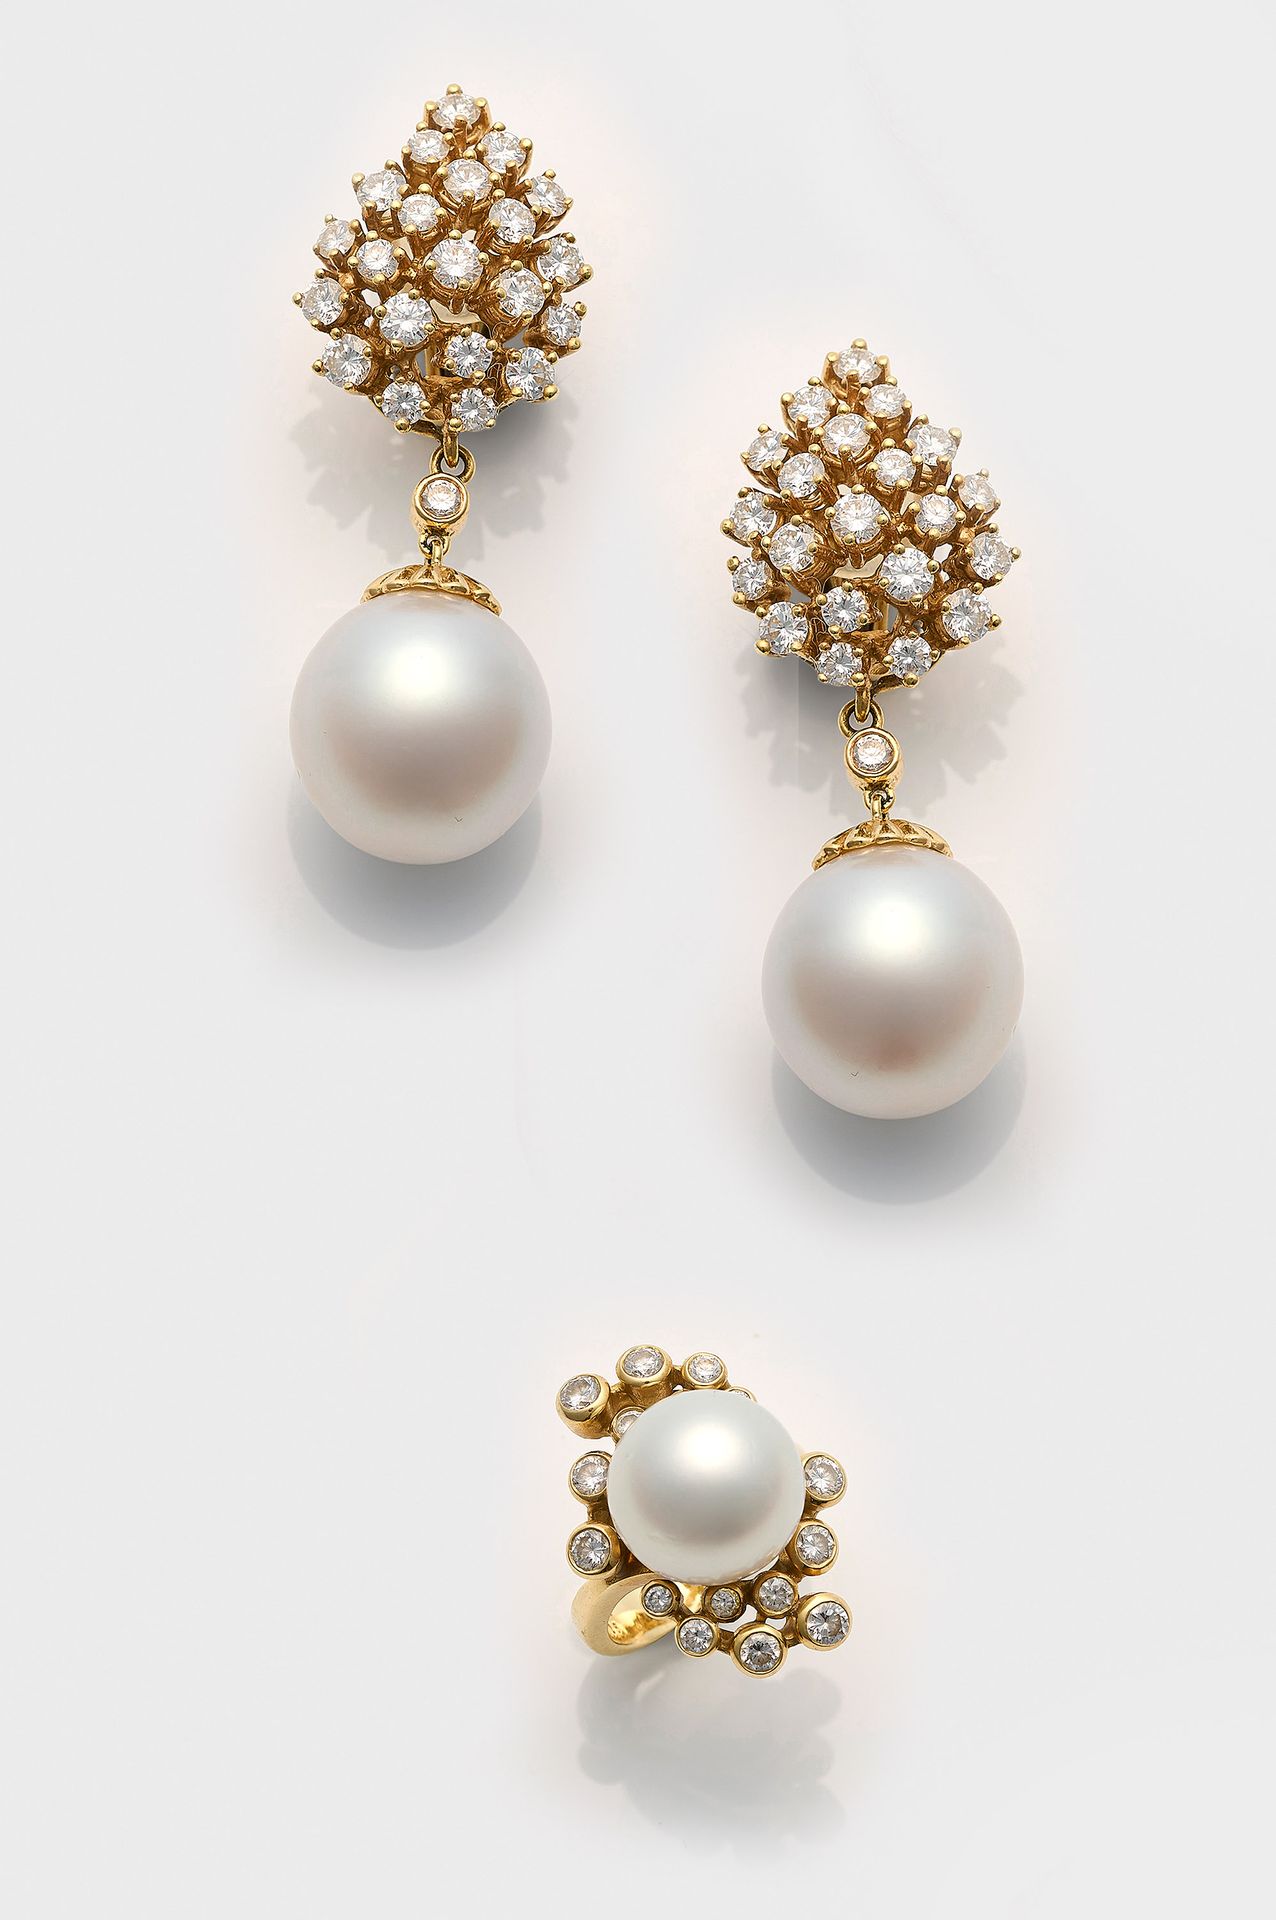 Null Leicht 制作的优雅的南海珍珠和明亮式切割钻石耳环一对，配有相应的戒指。每枚耳环均镶嵌一颗约 13 - 15 毫米的白色南海珍珠，呈现绚丽多彩的粉&hellip;